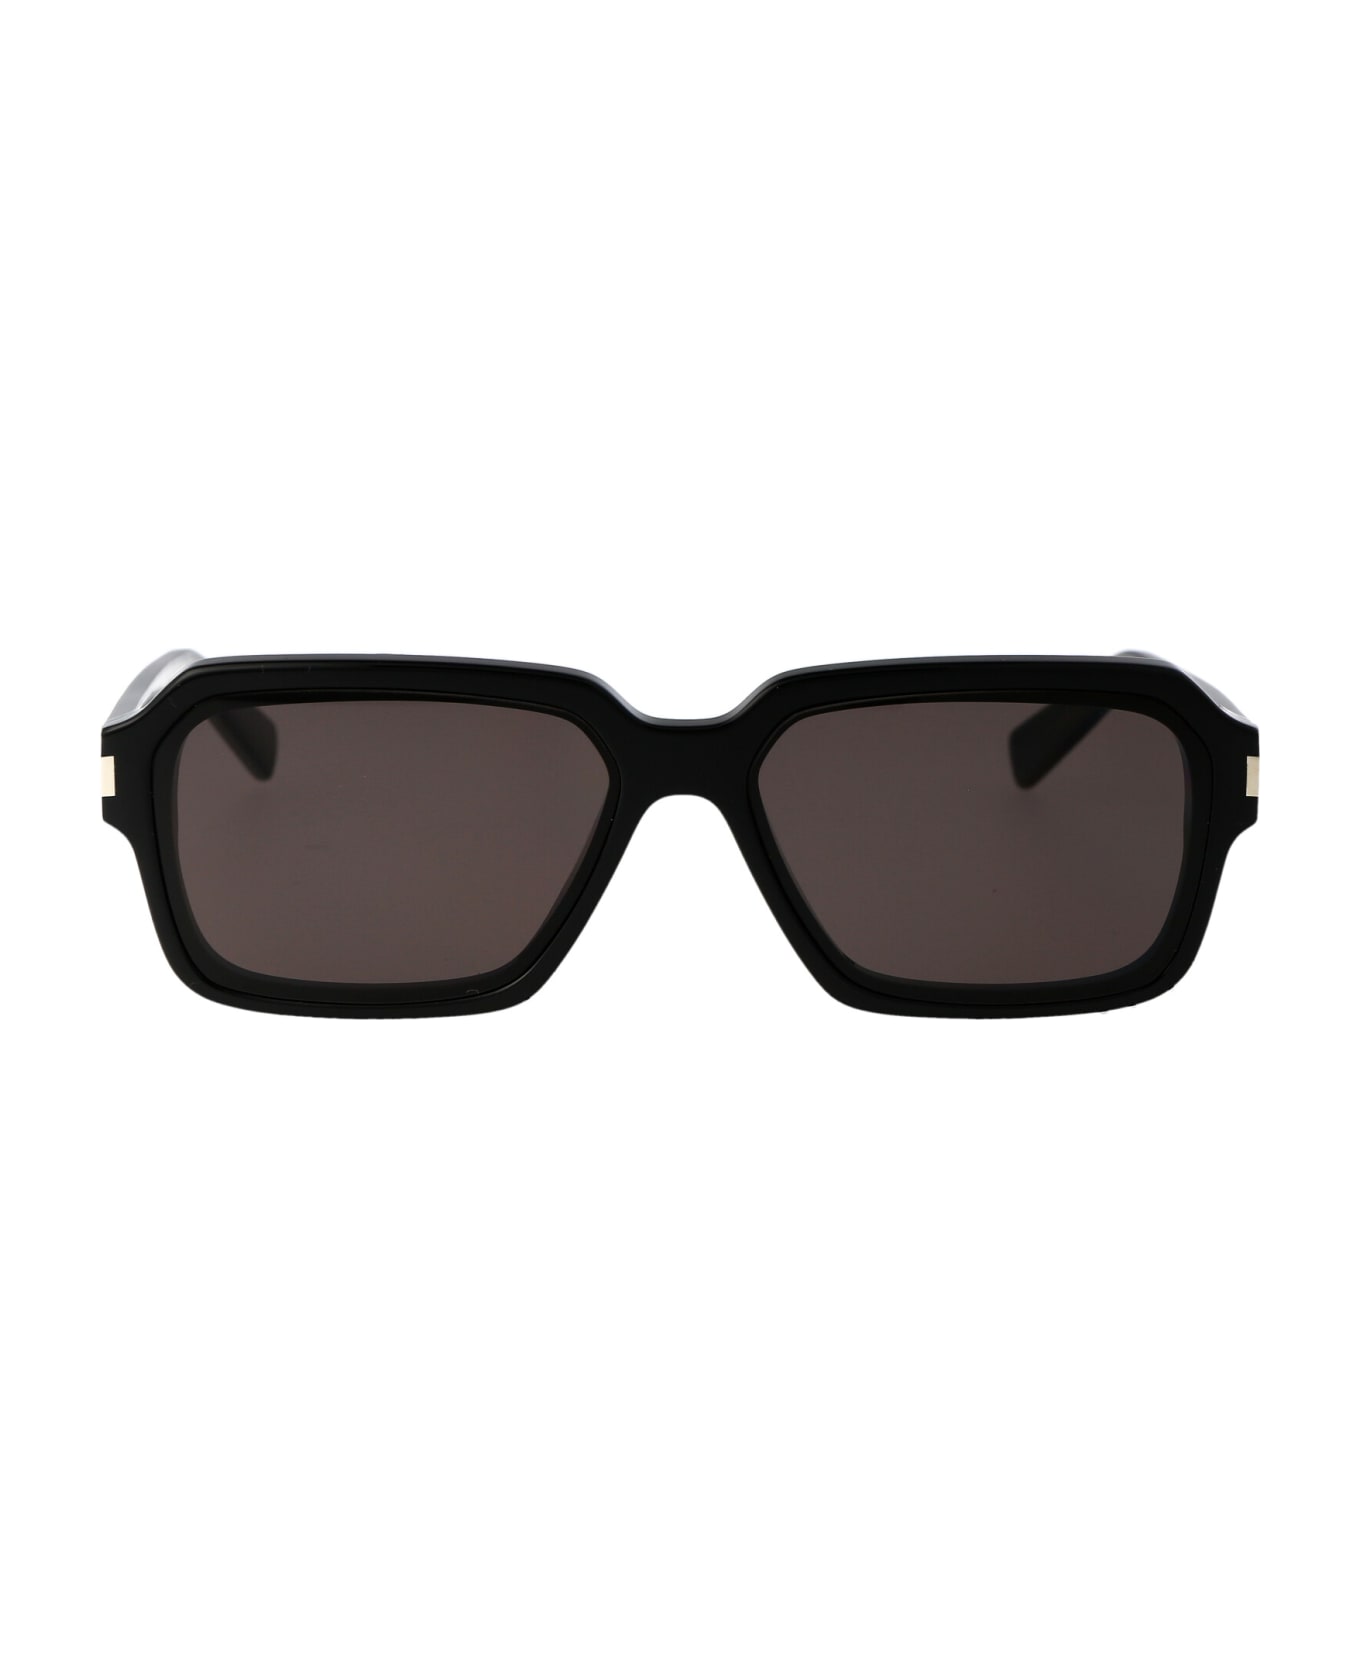 Saint Laurent Eyewear Sl 611 Sunglasses - 001 BLACK BLACK BLACK サングラス